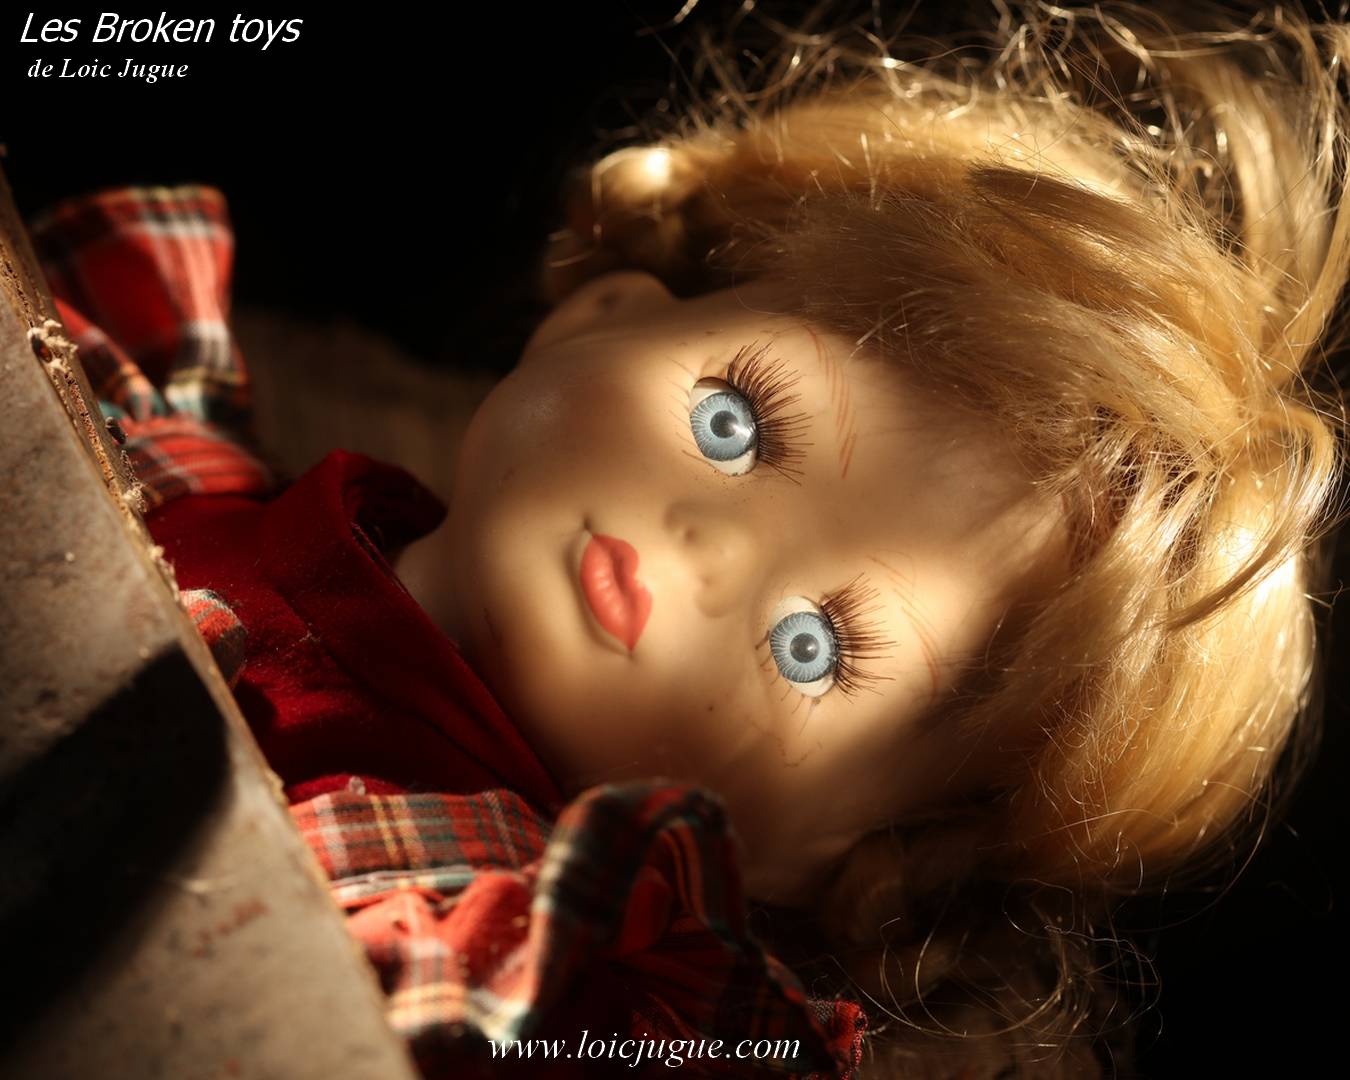 Les broken toys de Loïc Jugue:  La poupée et la hache (détail)